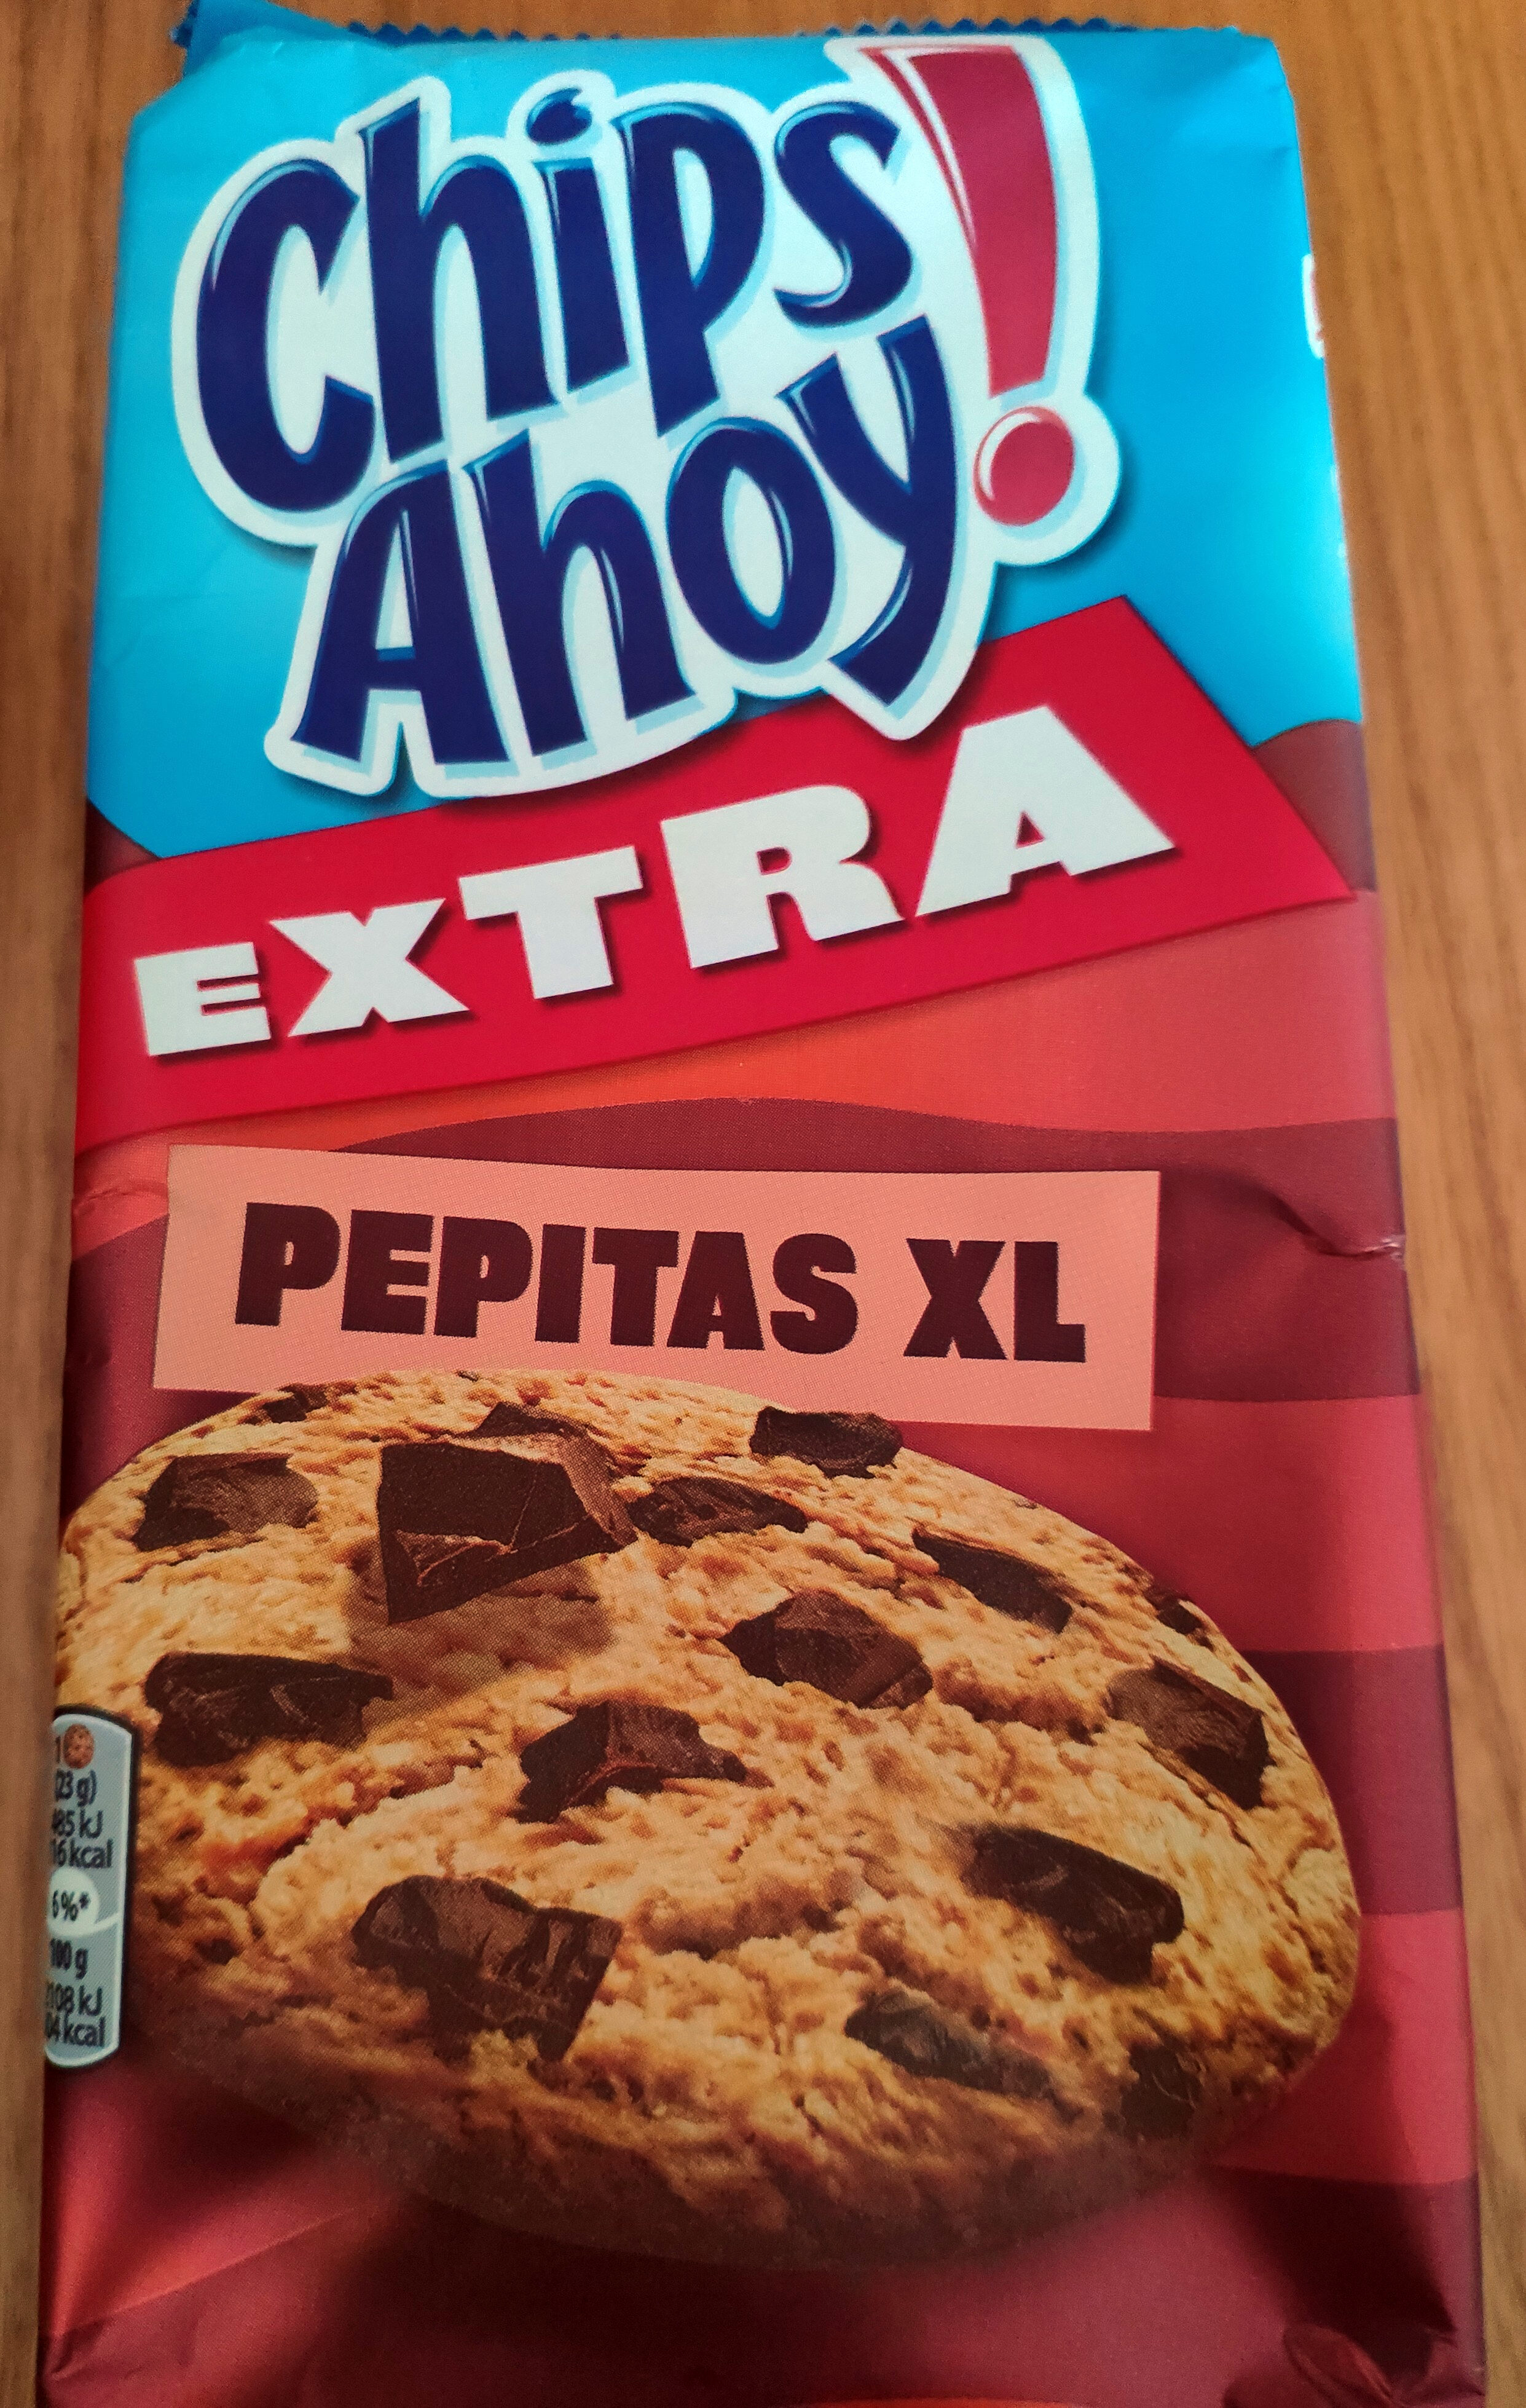 Extra galletas con pepitas xl de chocolate - Produto